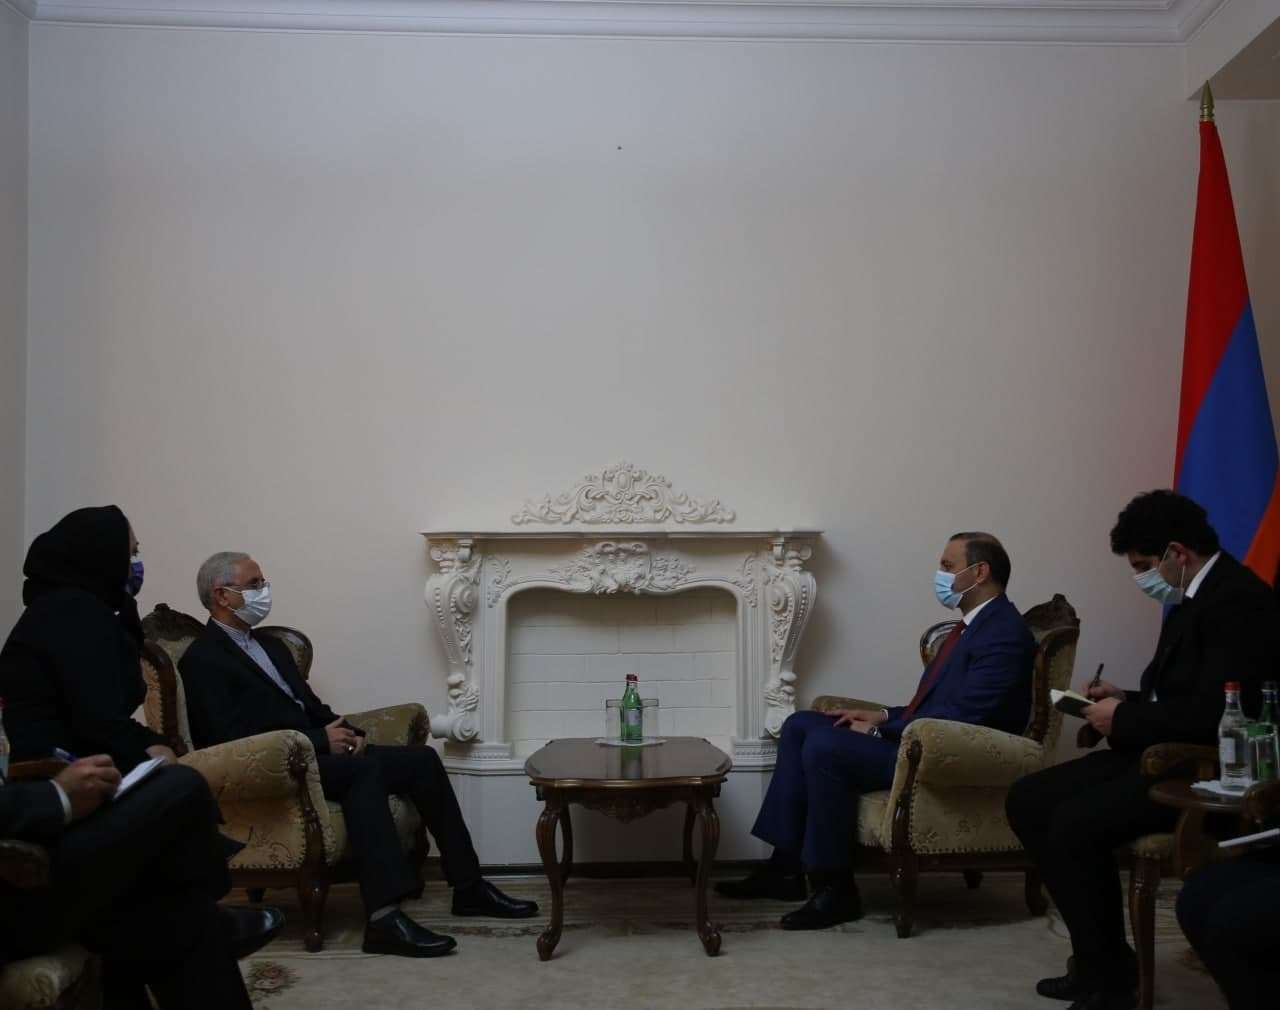 جنگ روز گذشته؛ چرا سفیر ایران بلافاصله به دیدار دبیر شورای امنیت ارمنستان رفت؟